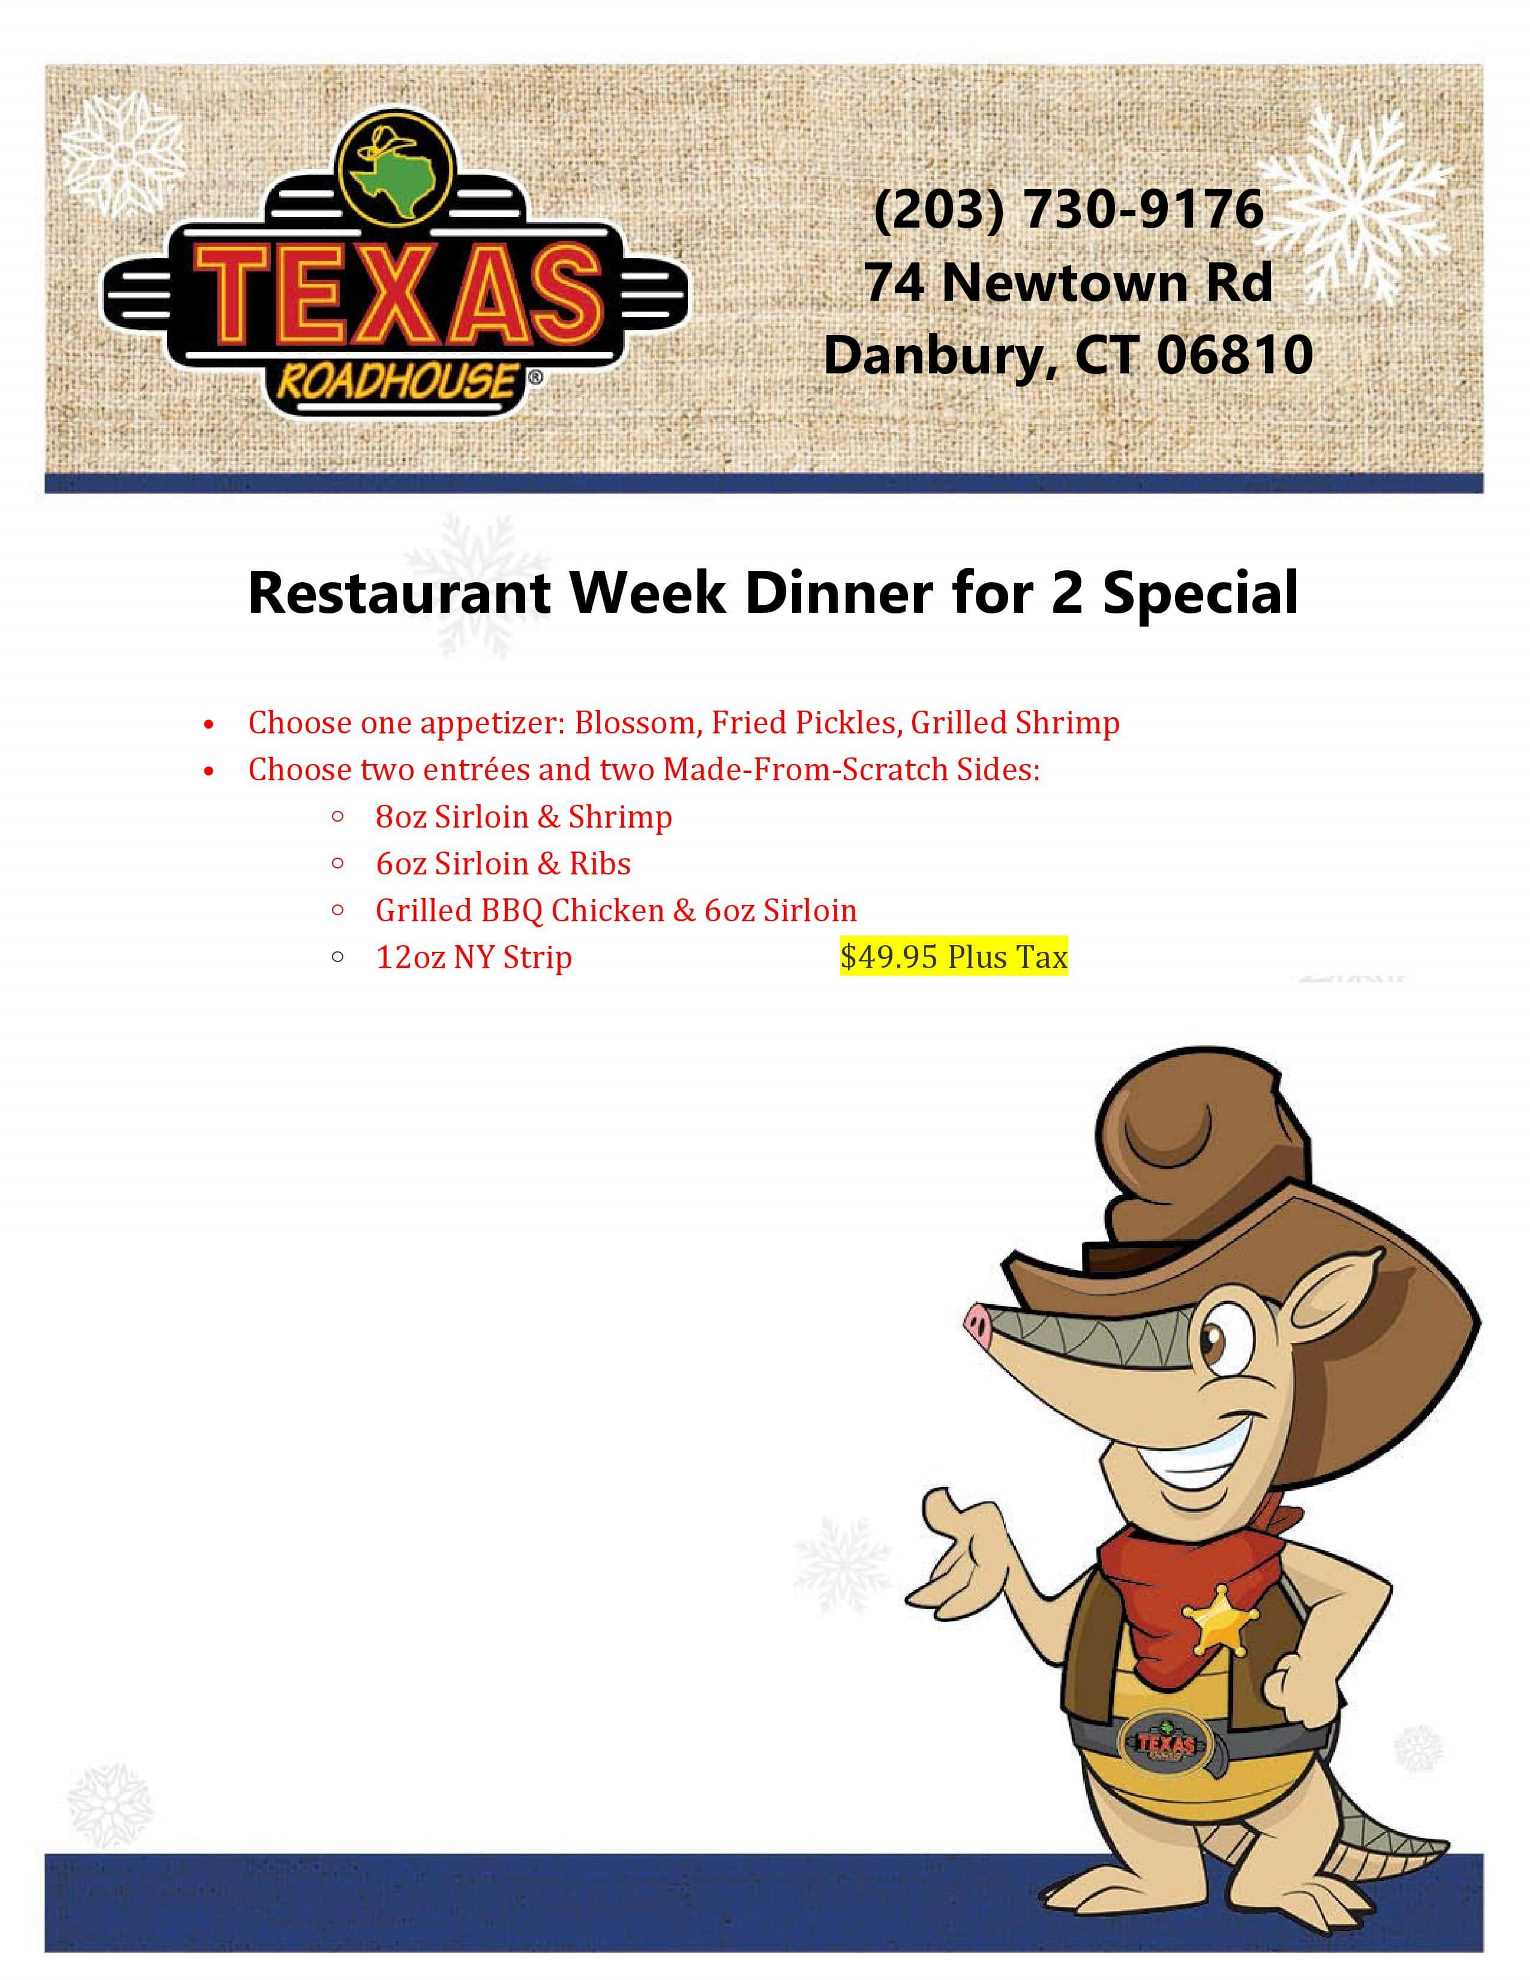 Texas Roadhouse Danbury Restaurant Week Connecticut Restaurant Week